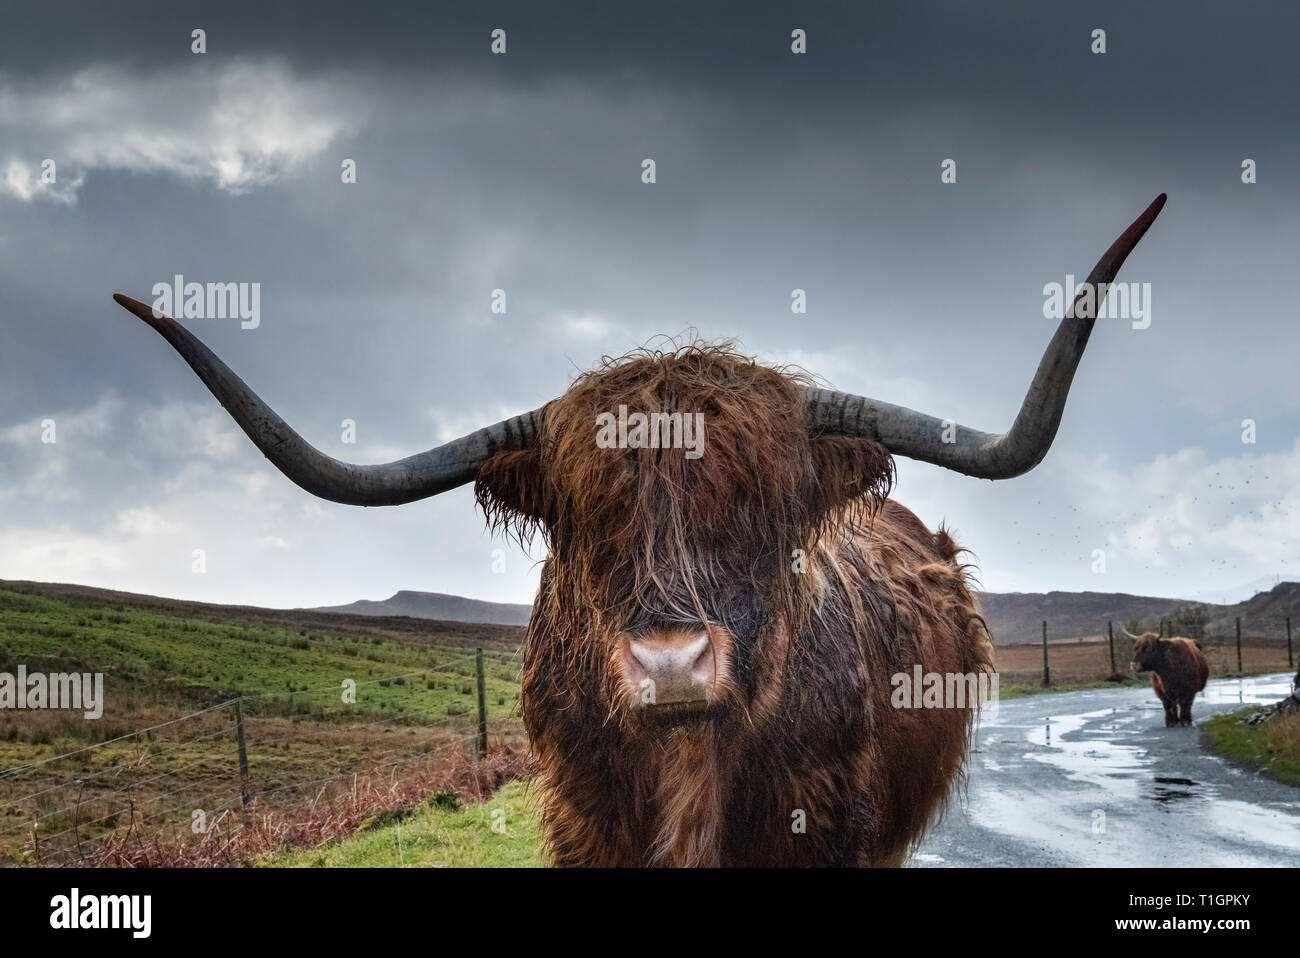 Près de Highland cattle Elgol, île de Skye, Hébrides intérieures, Ecosse, Royaume-Uni Banque D'Images